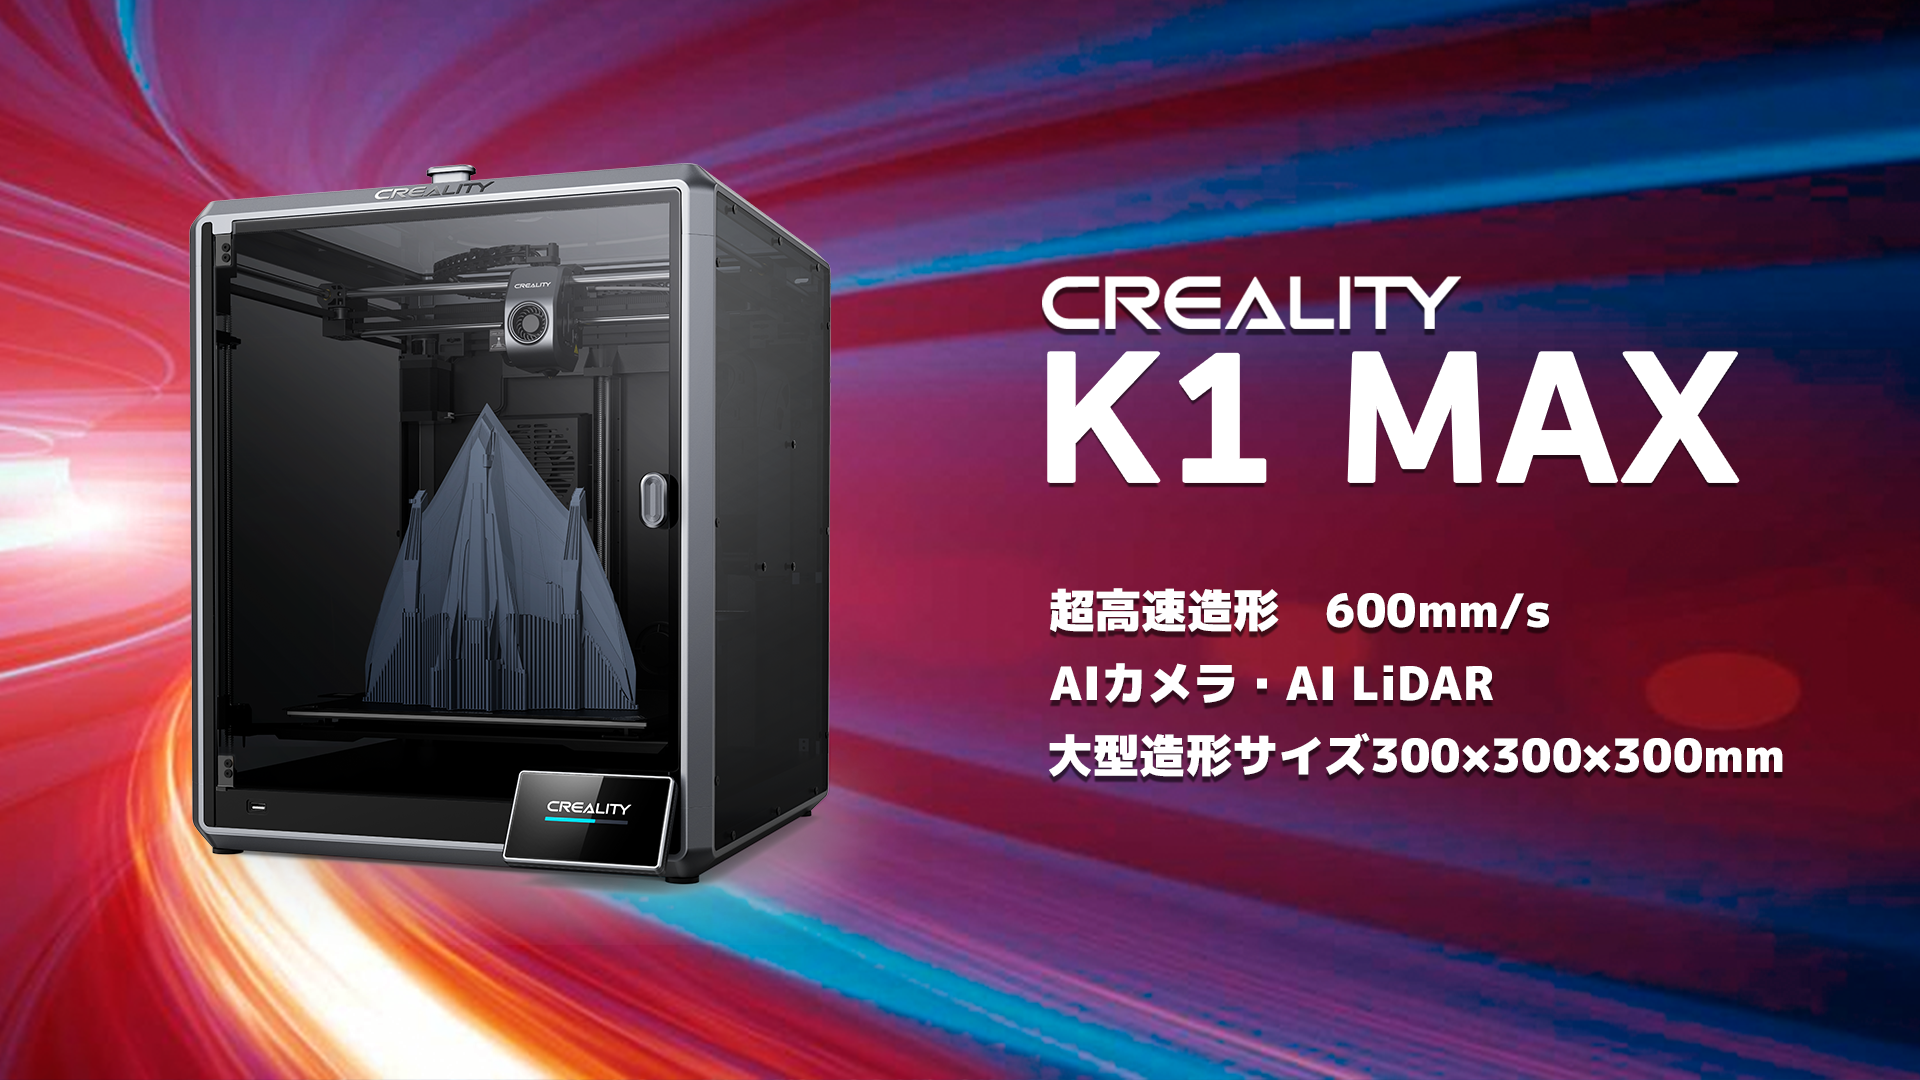 超高速造形600mm/s！大型造形機Creality社【K1 MAX】FDM3D